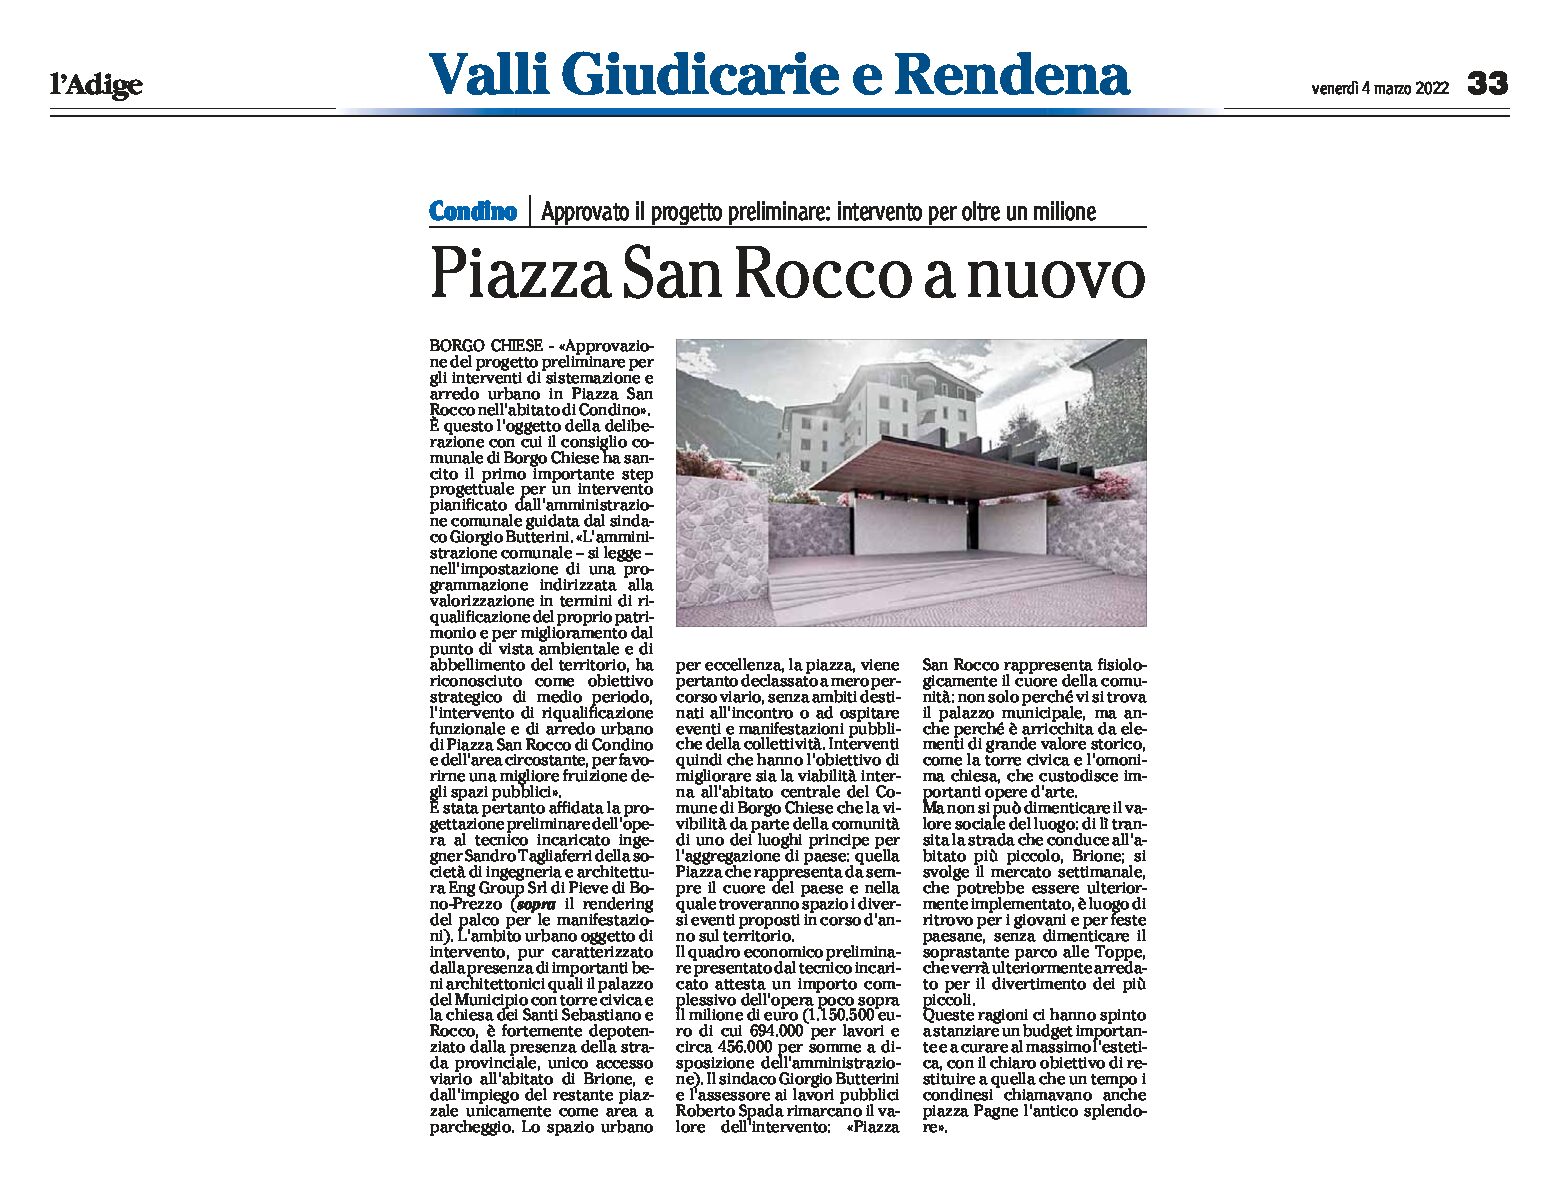 Condino: piazza San Rocco a nuovo. Approvato il progetto